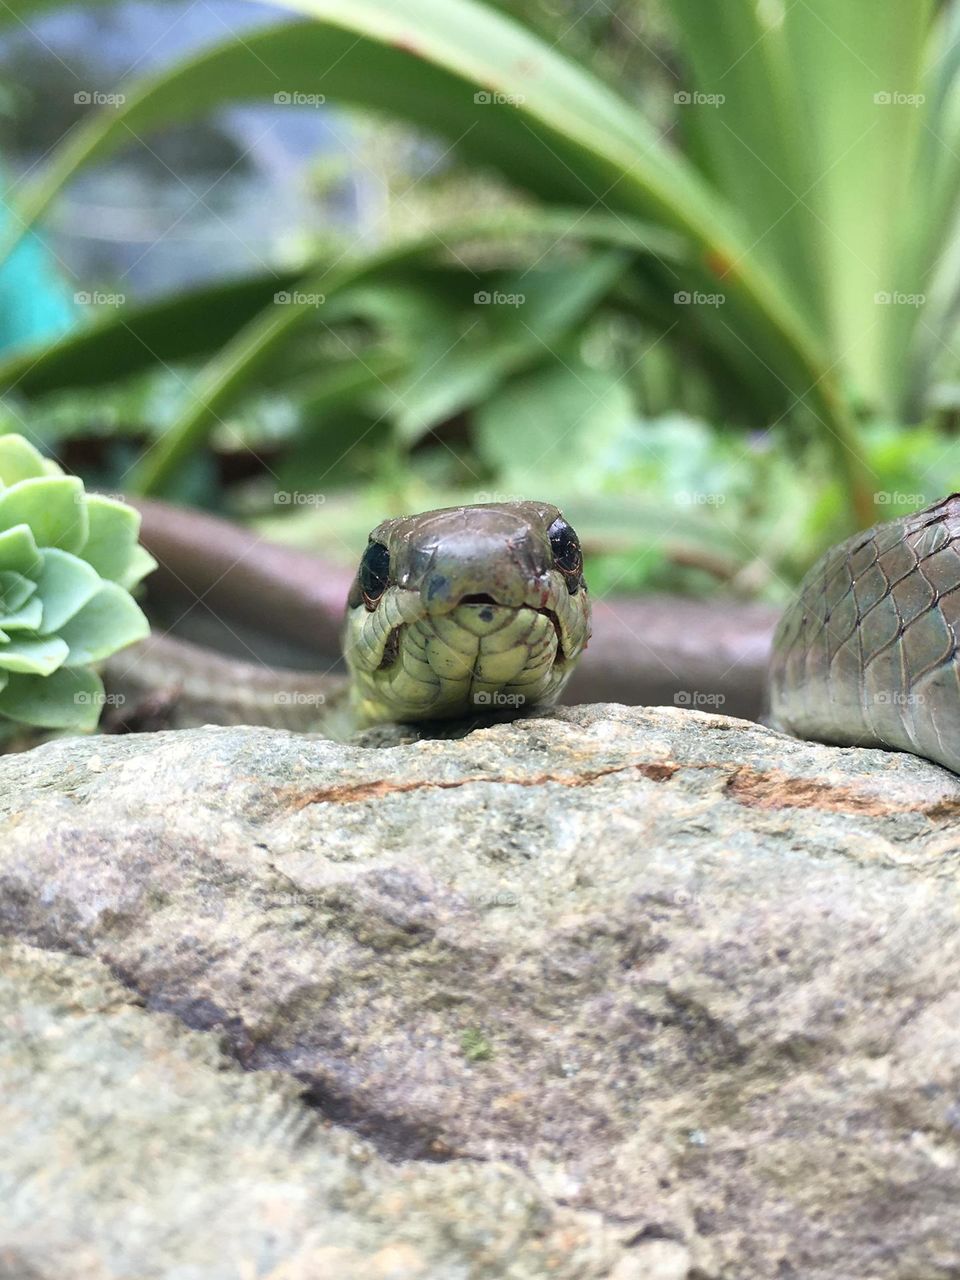 Snake, serpiente. Nature